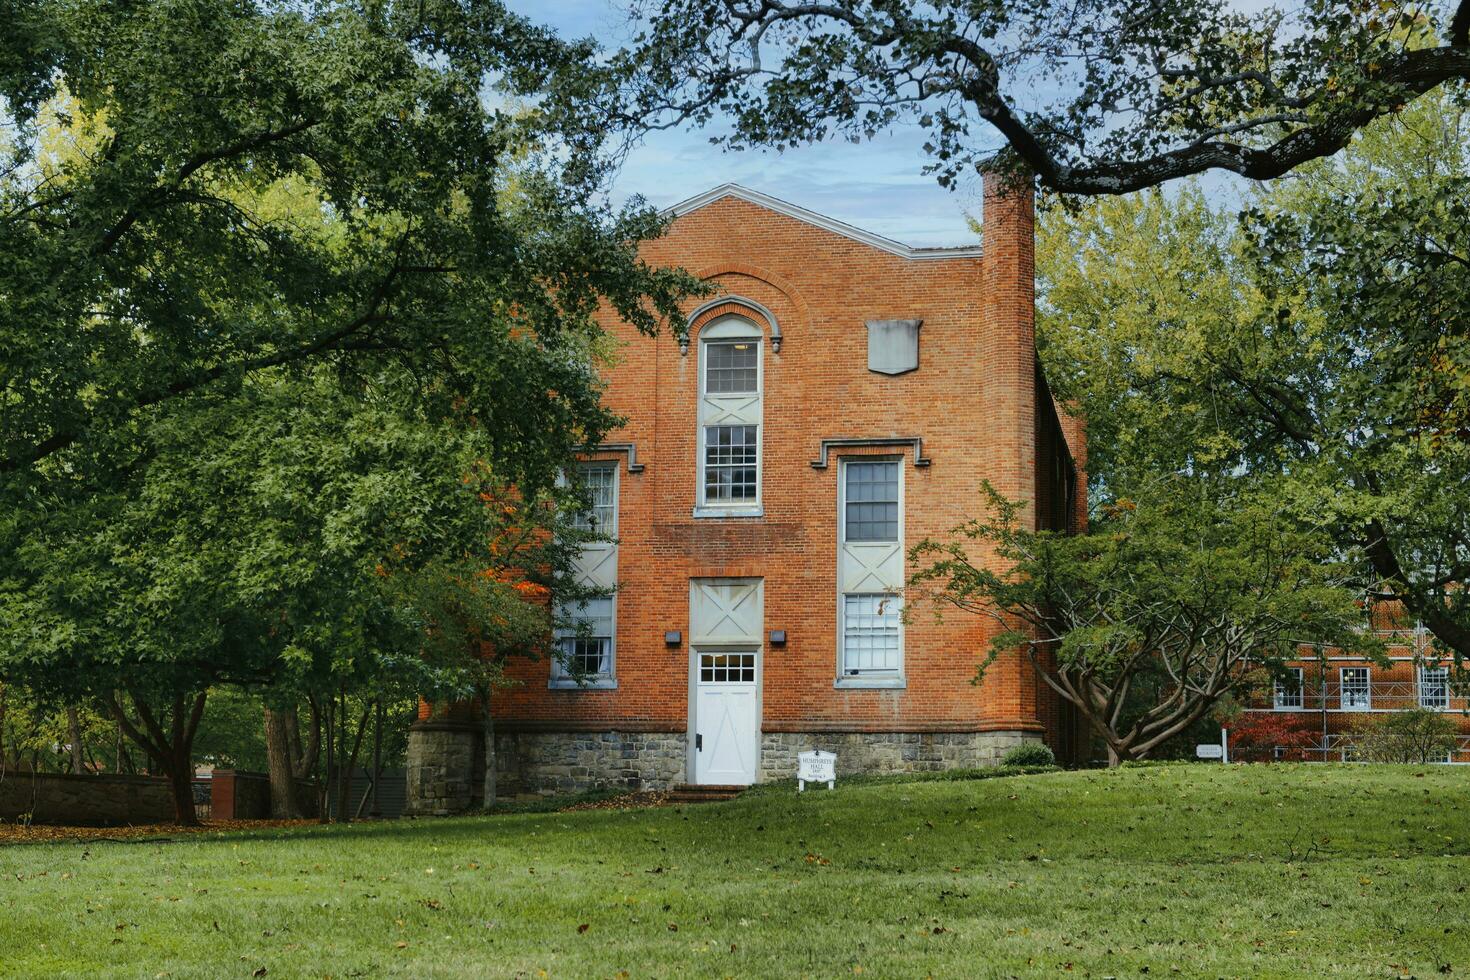 st. John's college campus, annapolis, Maryland, Verenigde Staten van Amerika, 2023. gebouwen overschaduwd door bomen Aan een van de oudste campussen in Amerika foto